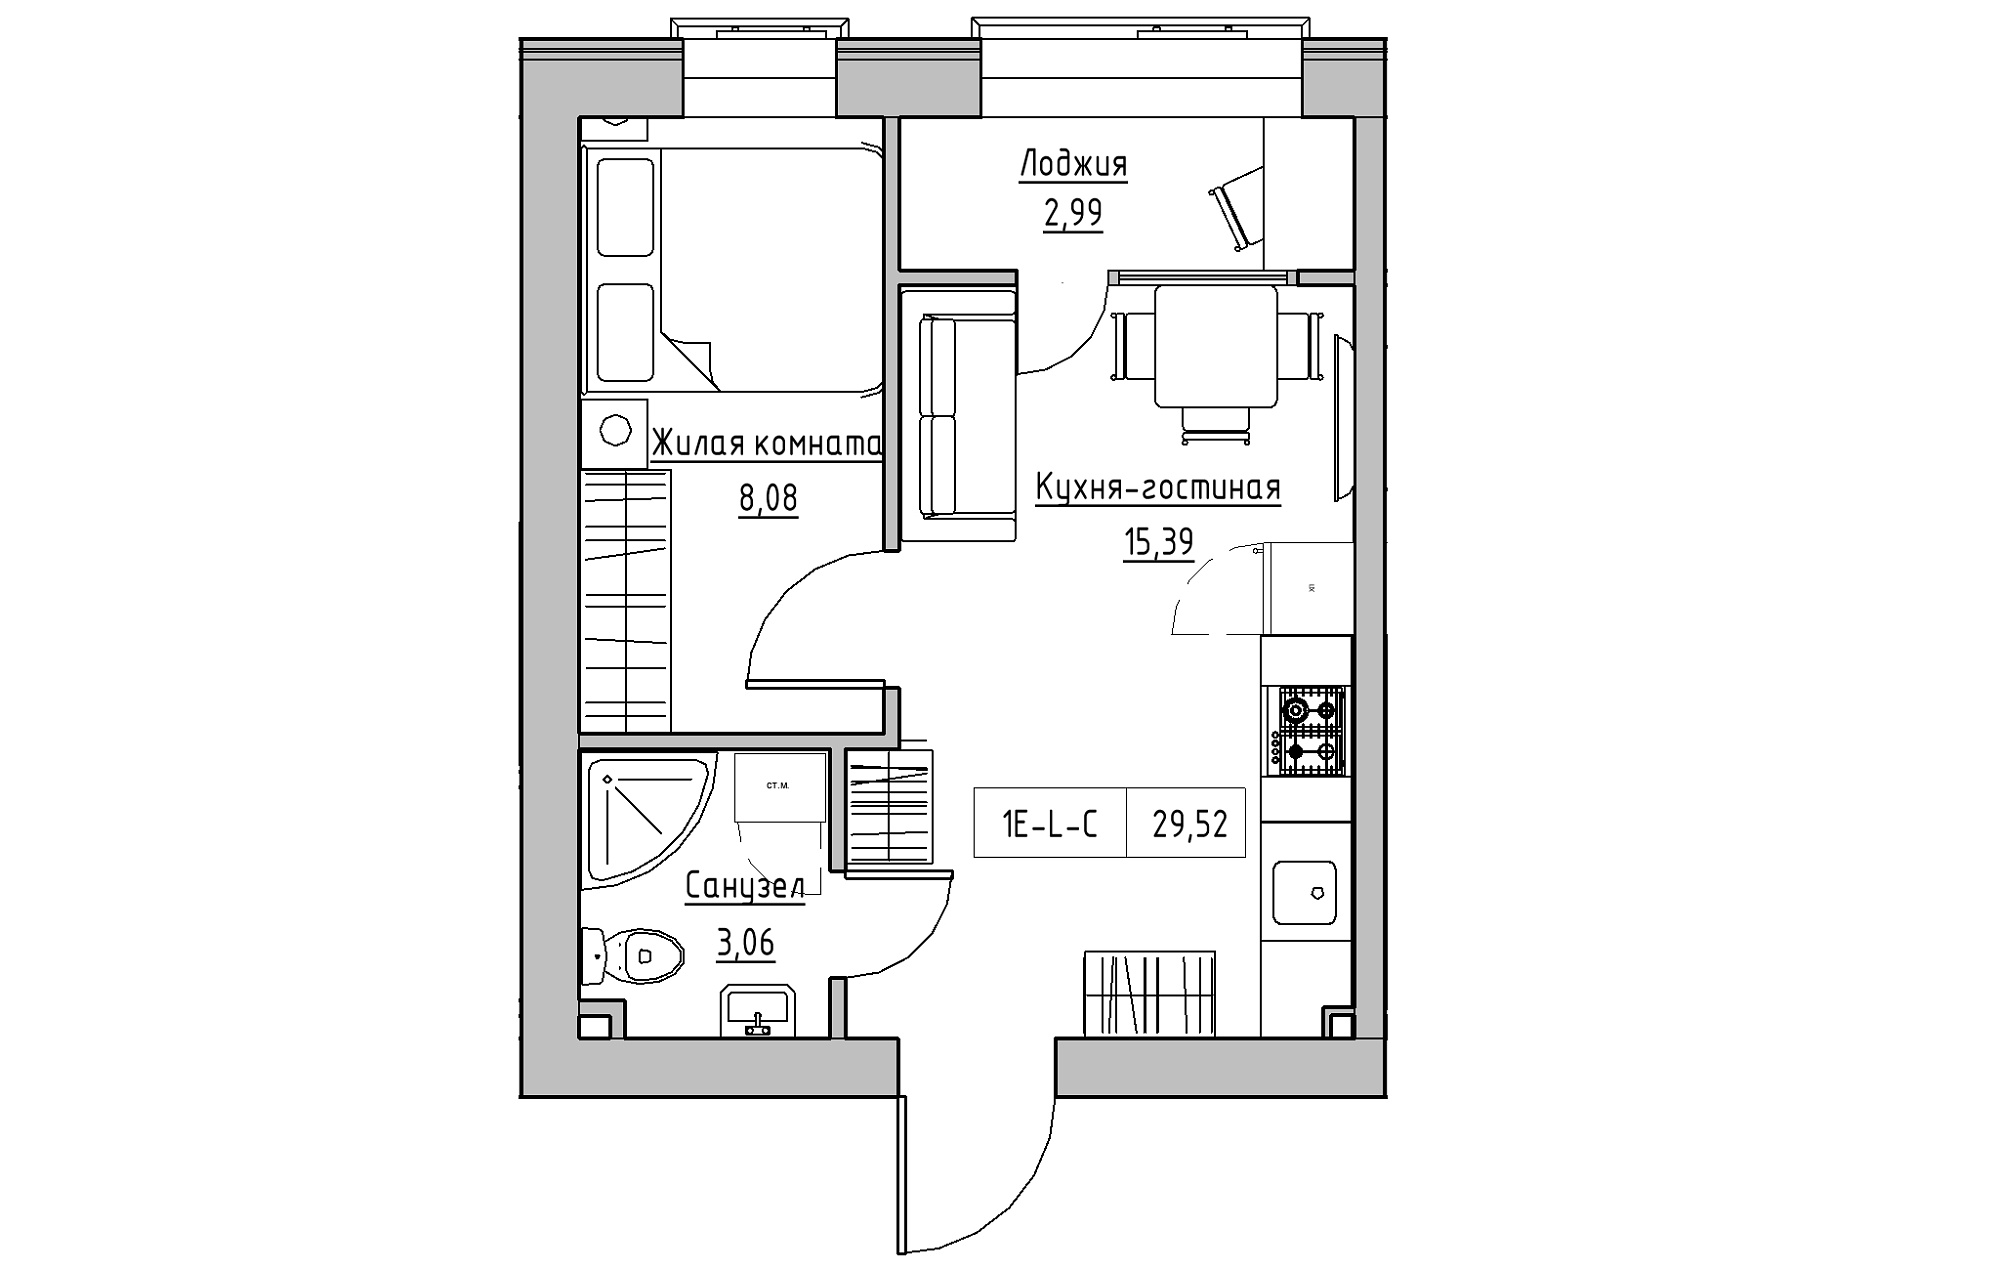 Планировка 1-к квартира площей 29.52м2, KS-018-02/0006.